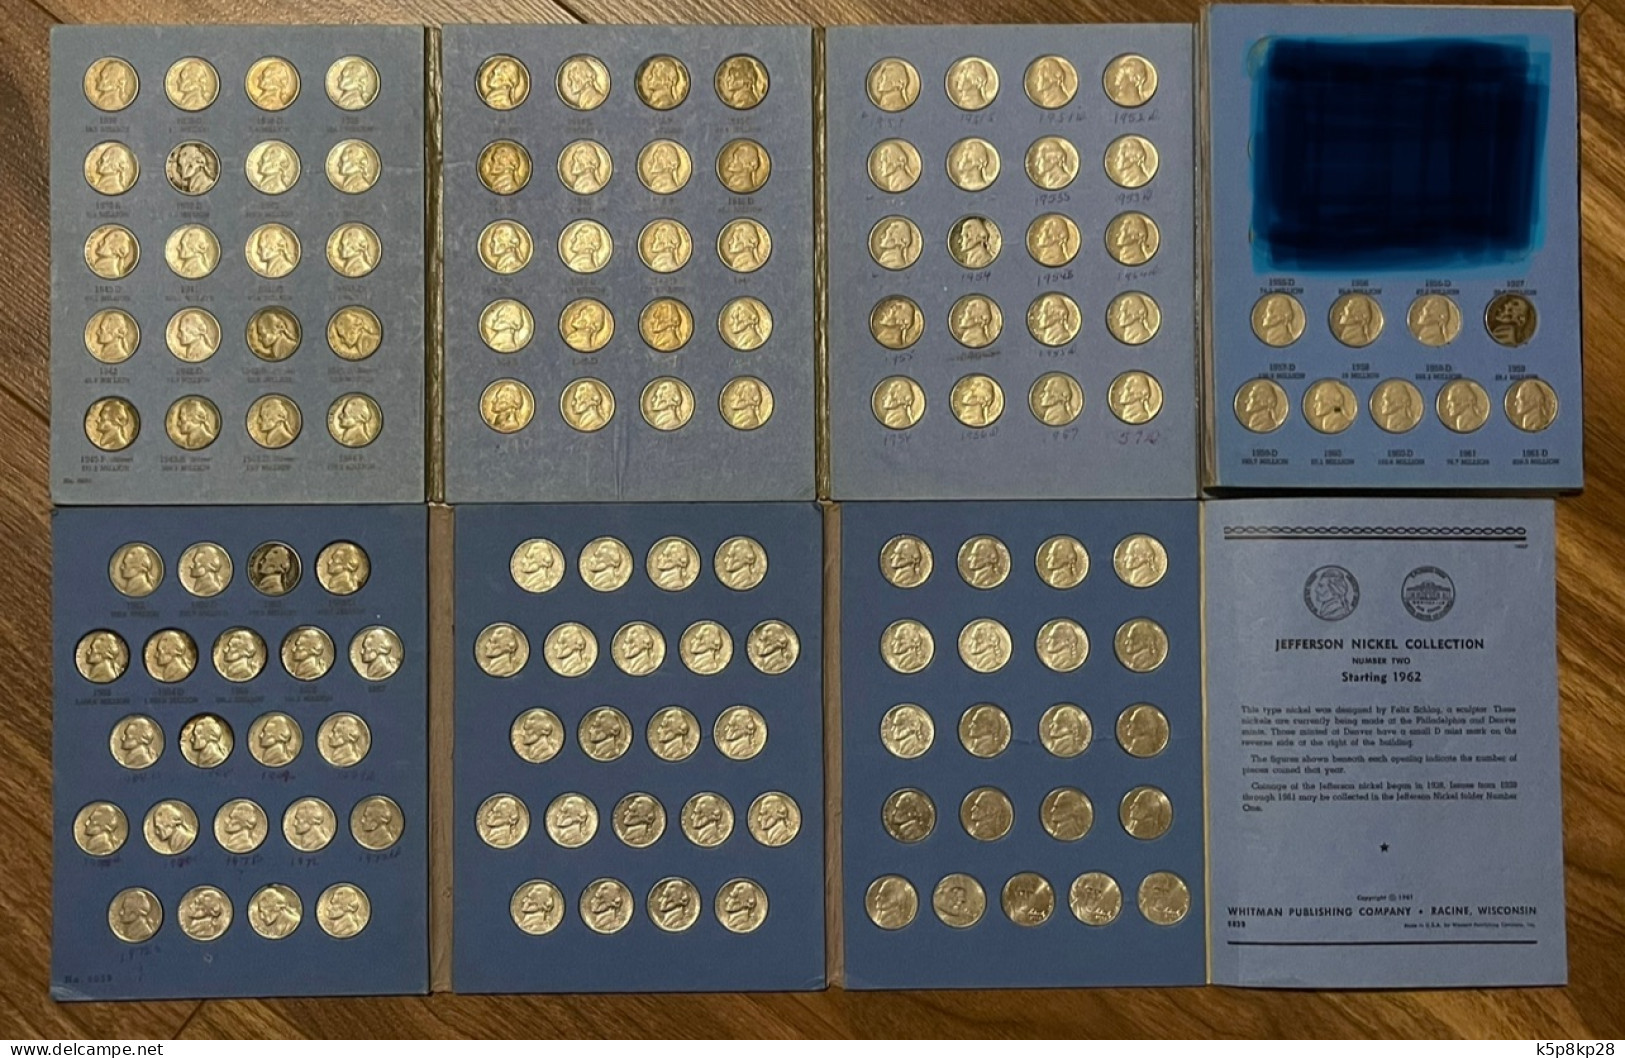 154 Jefferson Nickel USA 5 Cent Coins, 1938-2008, Cir & Almost Cir - Colecciones